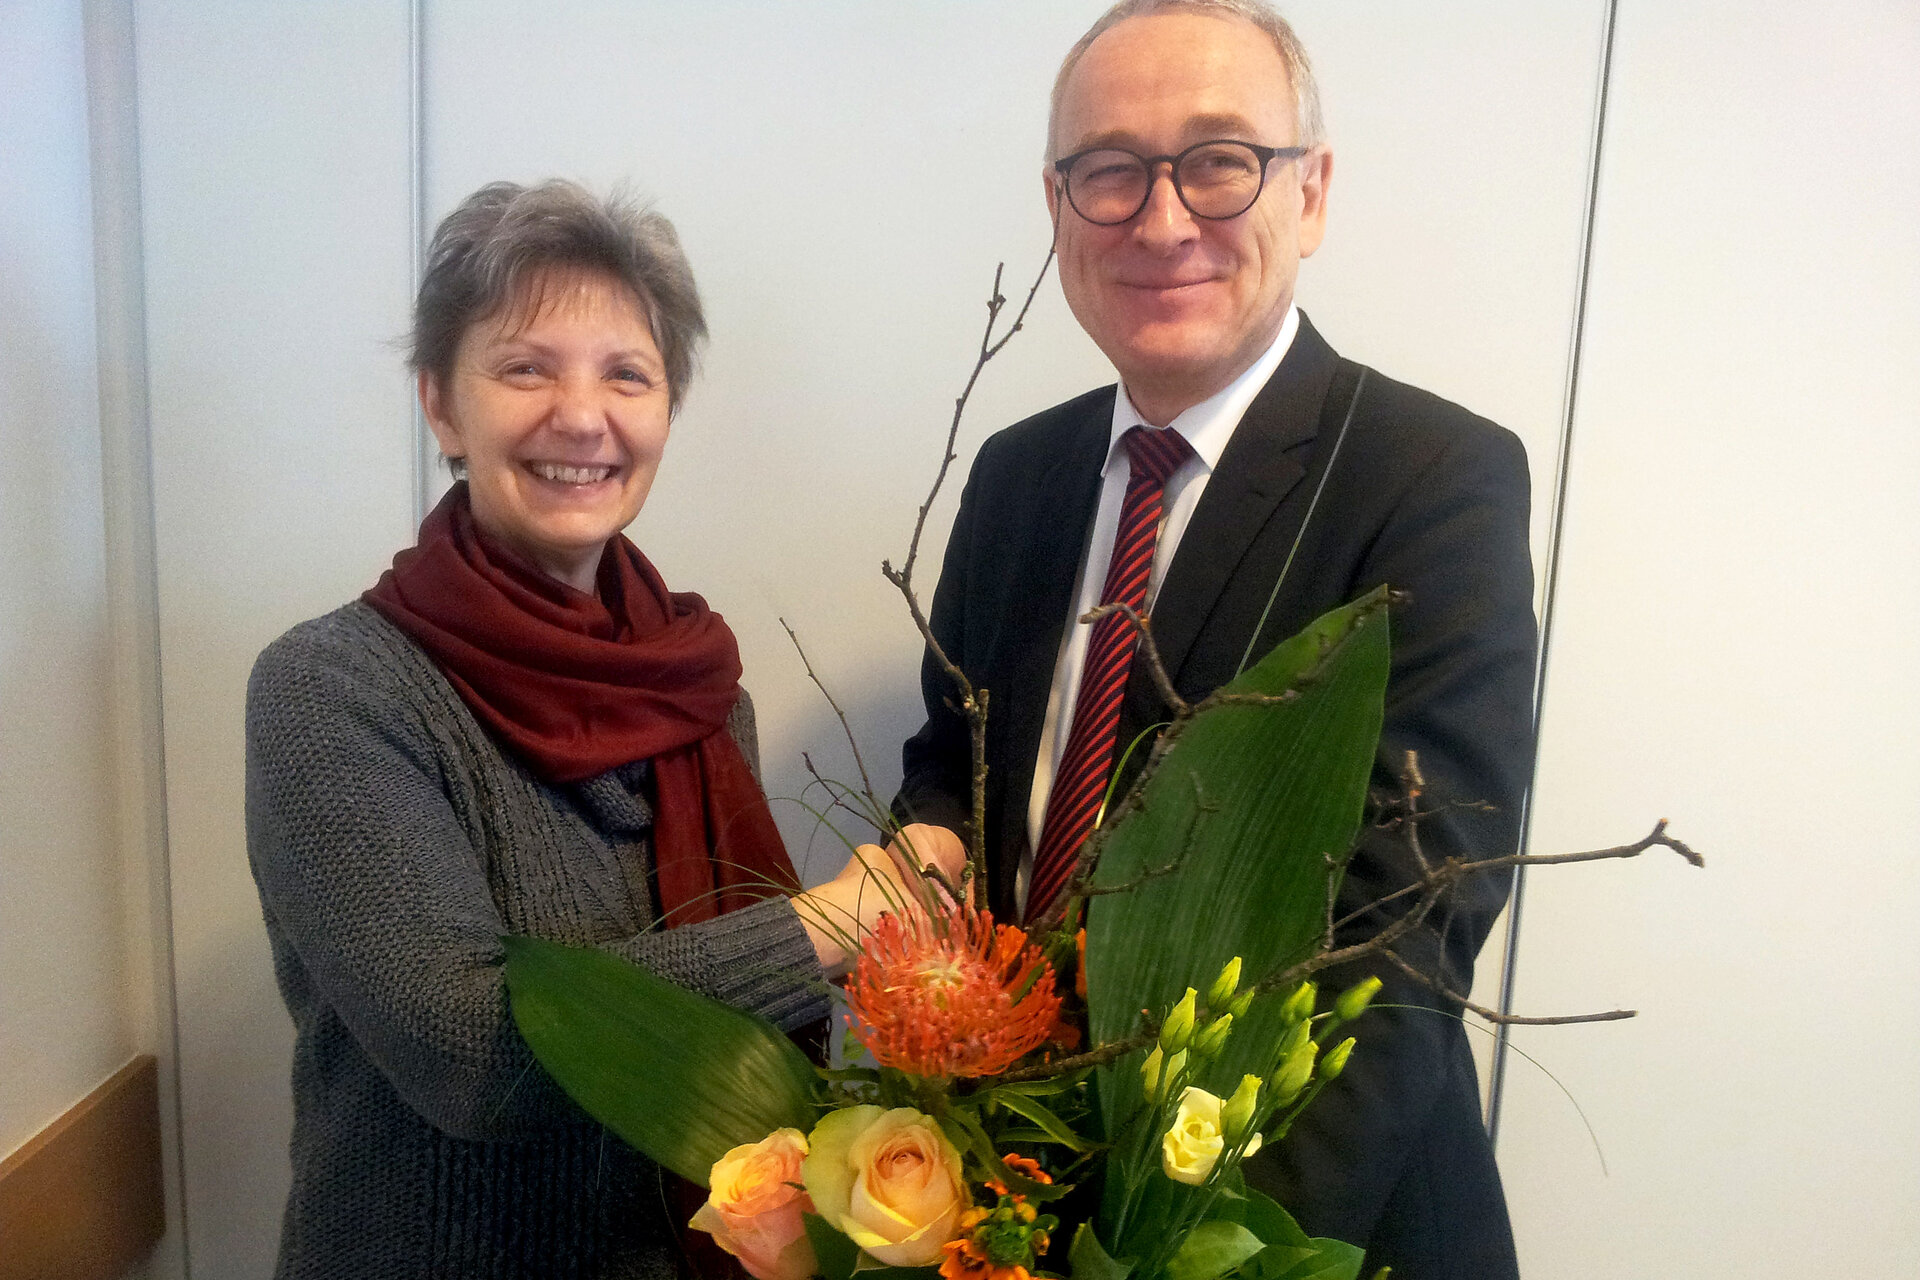 Hochschulpräsident Prof. Dr. Manfred Weisensee verabschiedete Prof. Carola Becker in den Ruhestand.